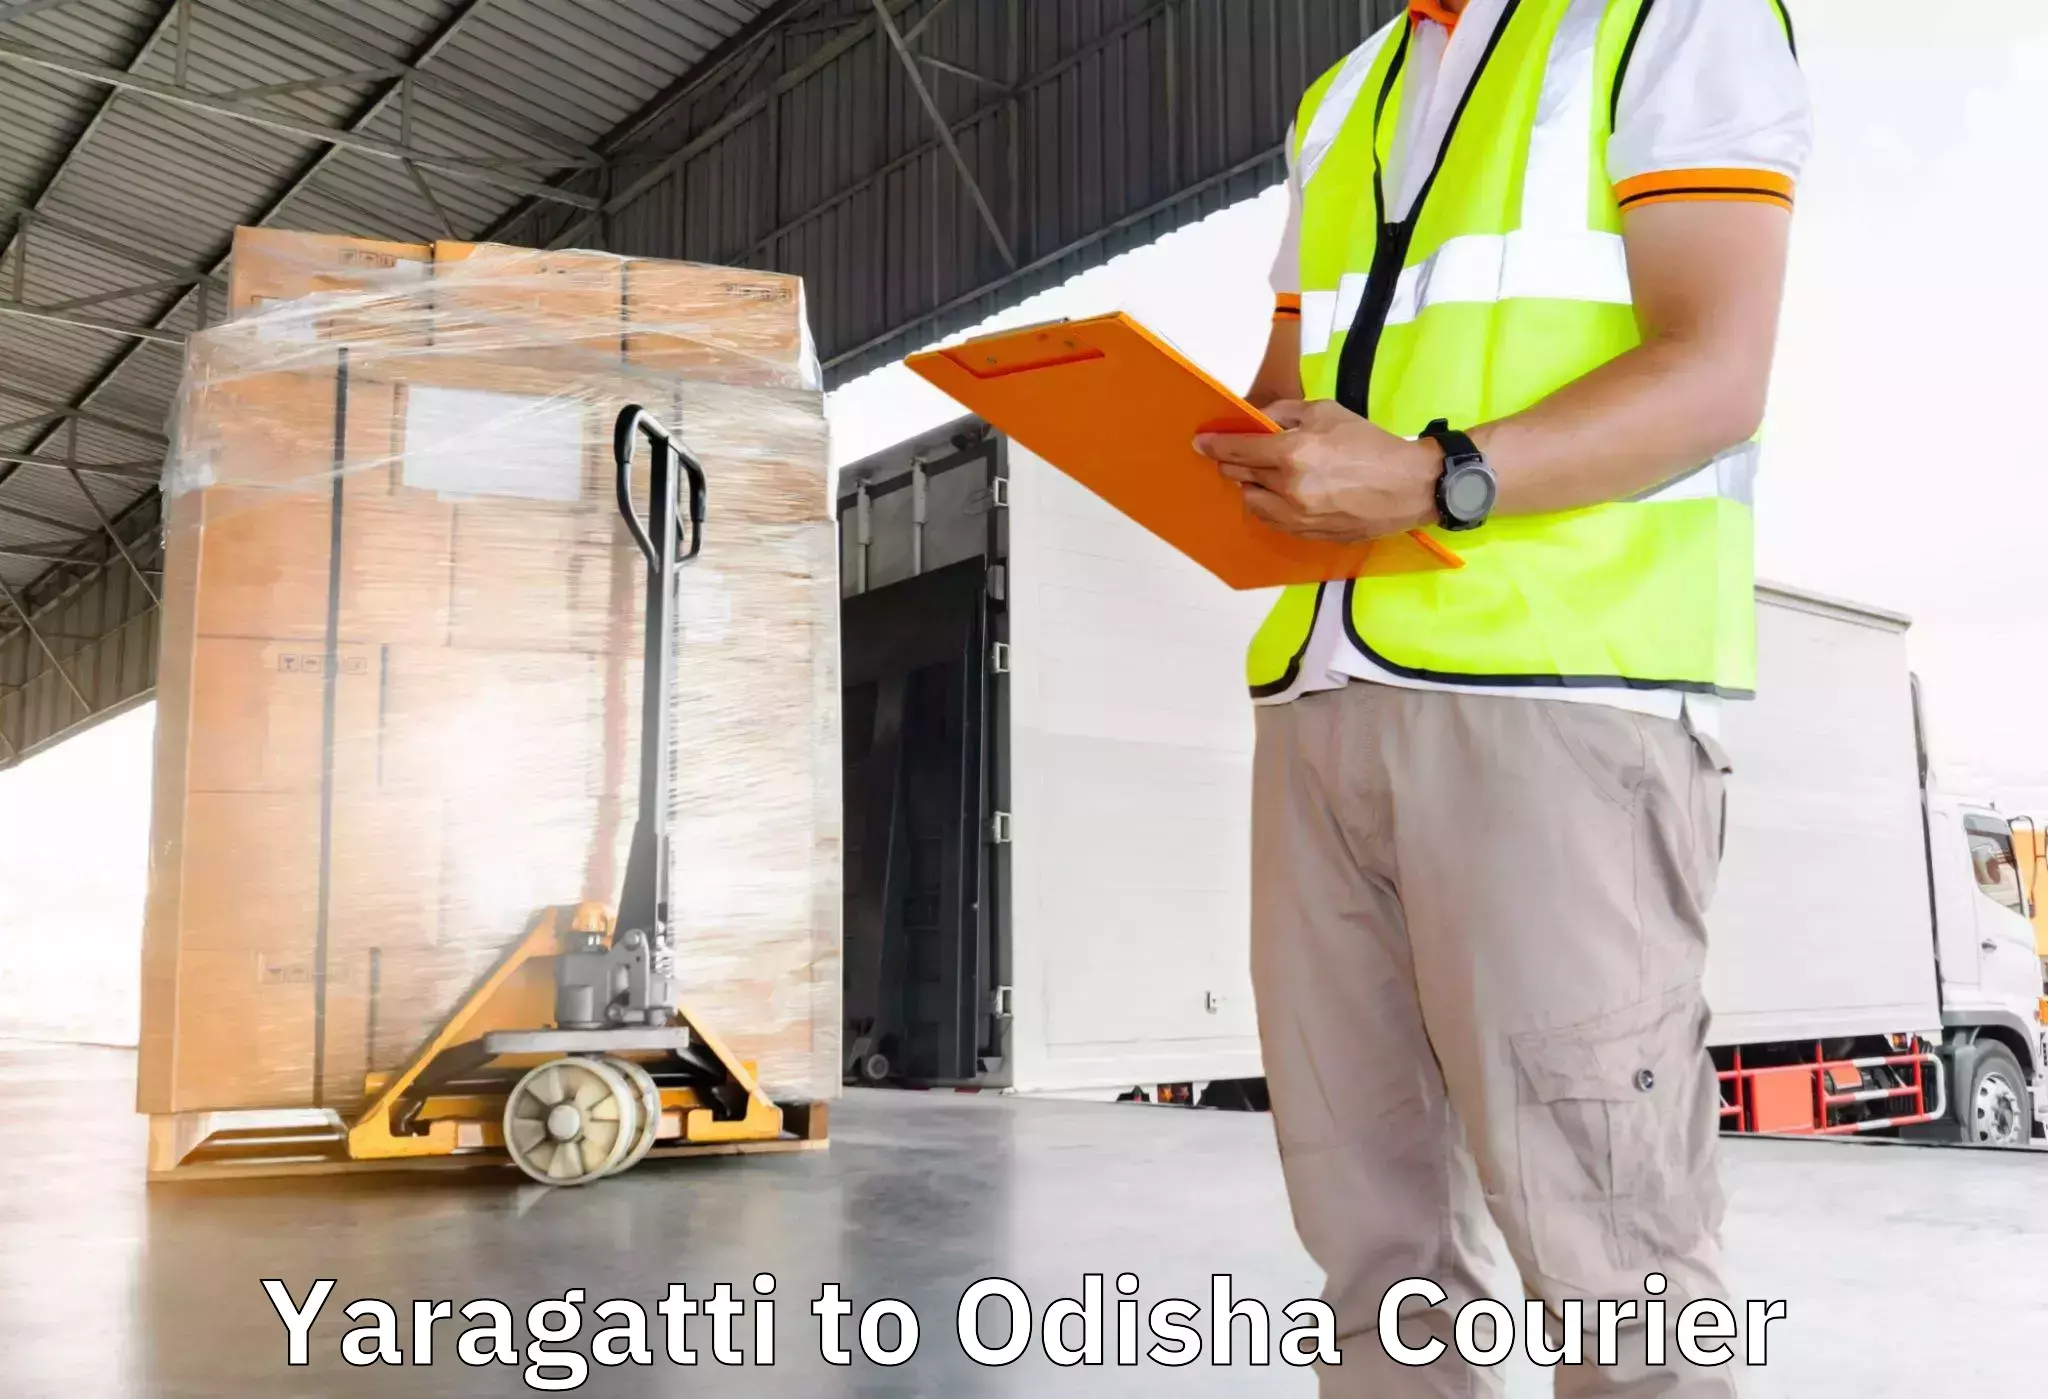 Furniture moving service Yaragatti to Jashipur